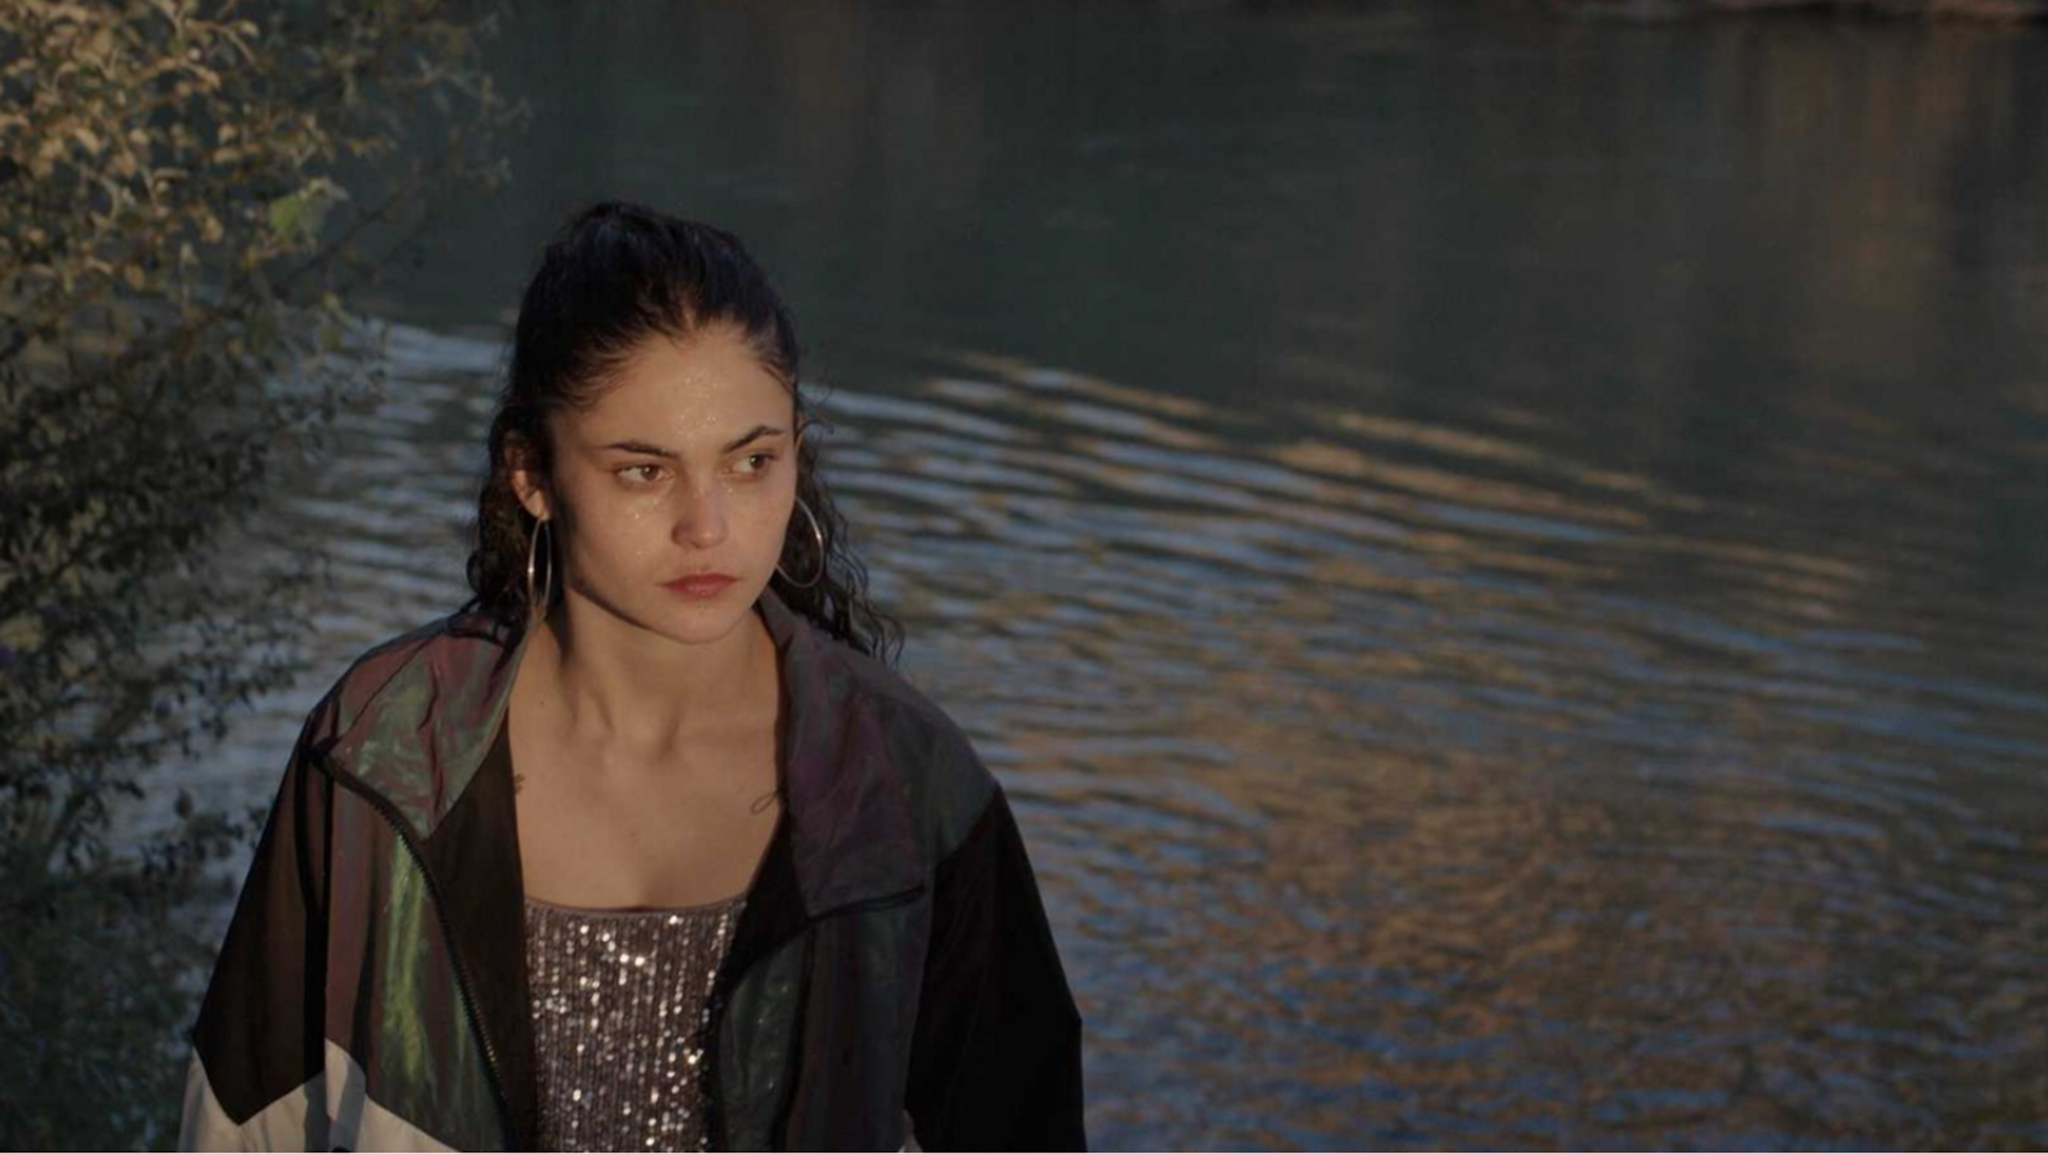 Luna Pamiés en 'El agua', una de las películas programadas en el ciclo